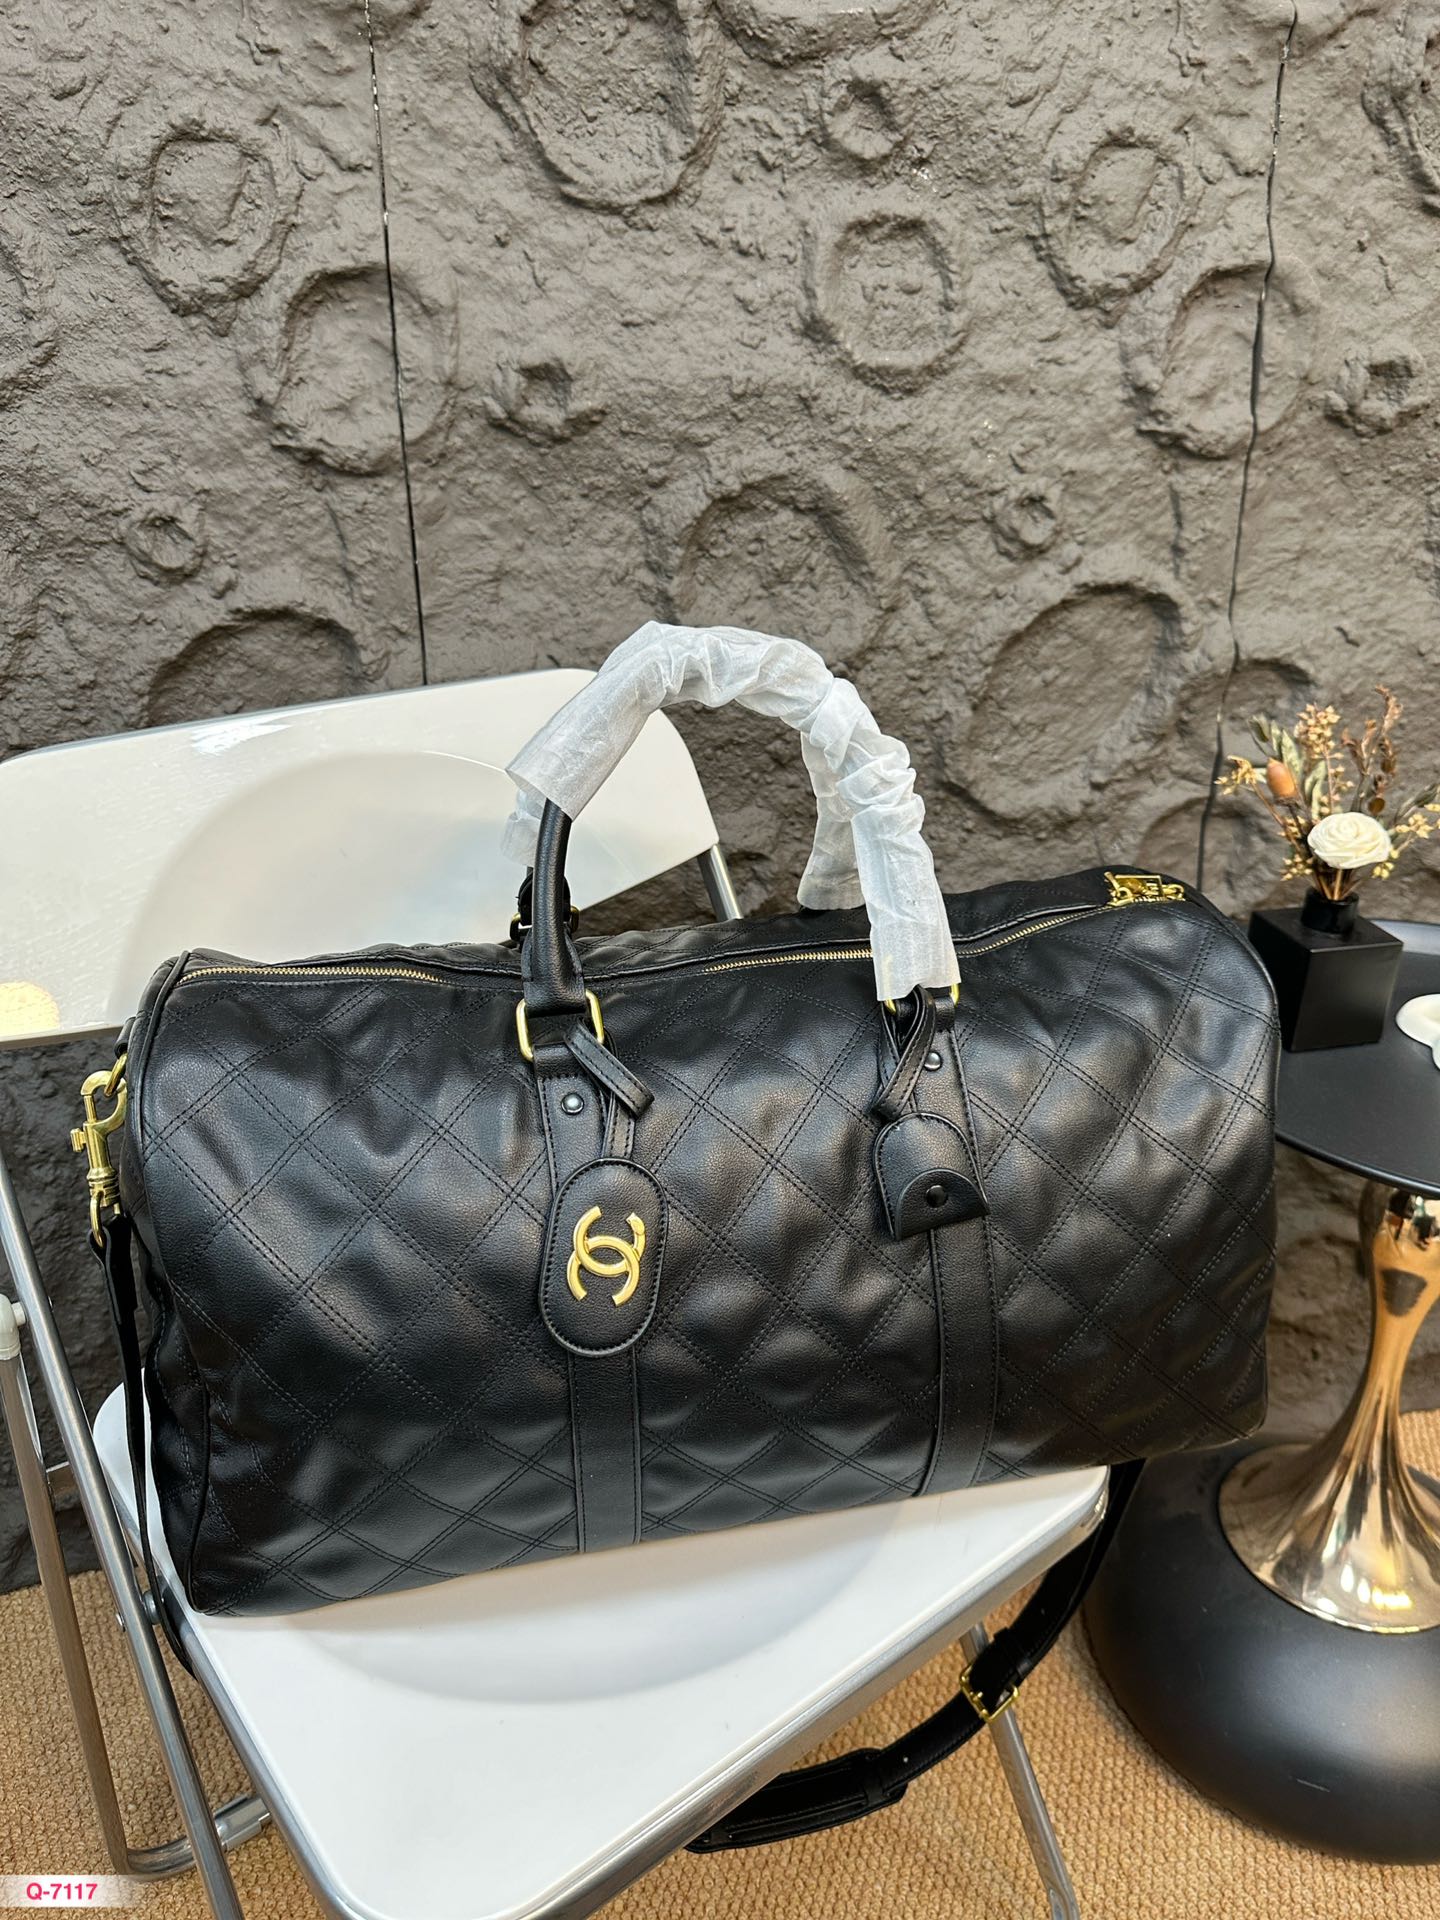 Chanel Taschen Reisetaschen Fashion